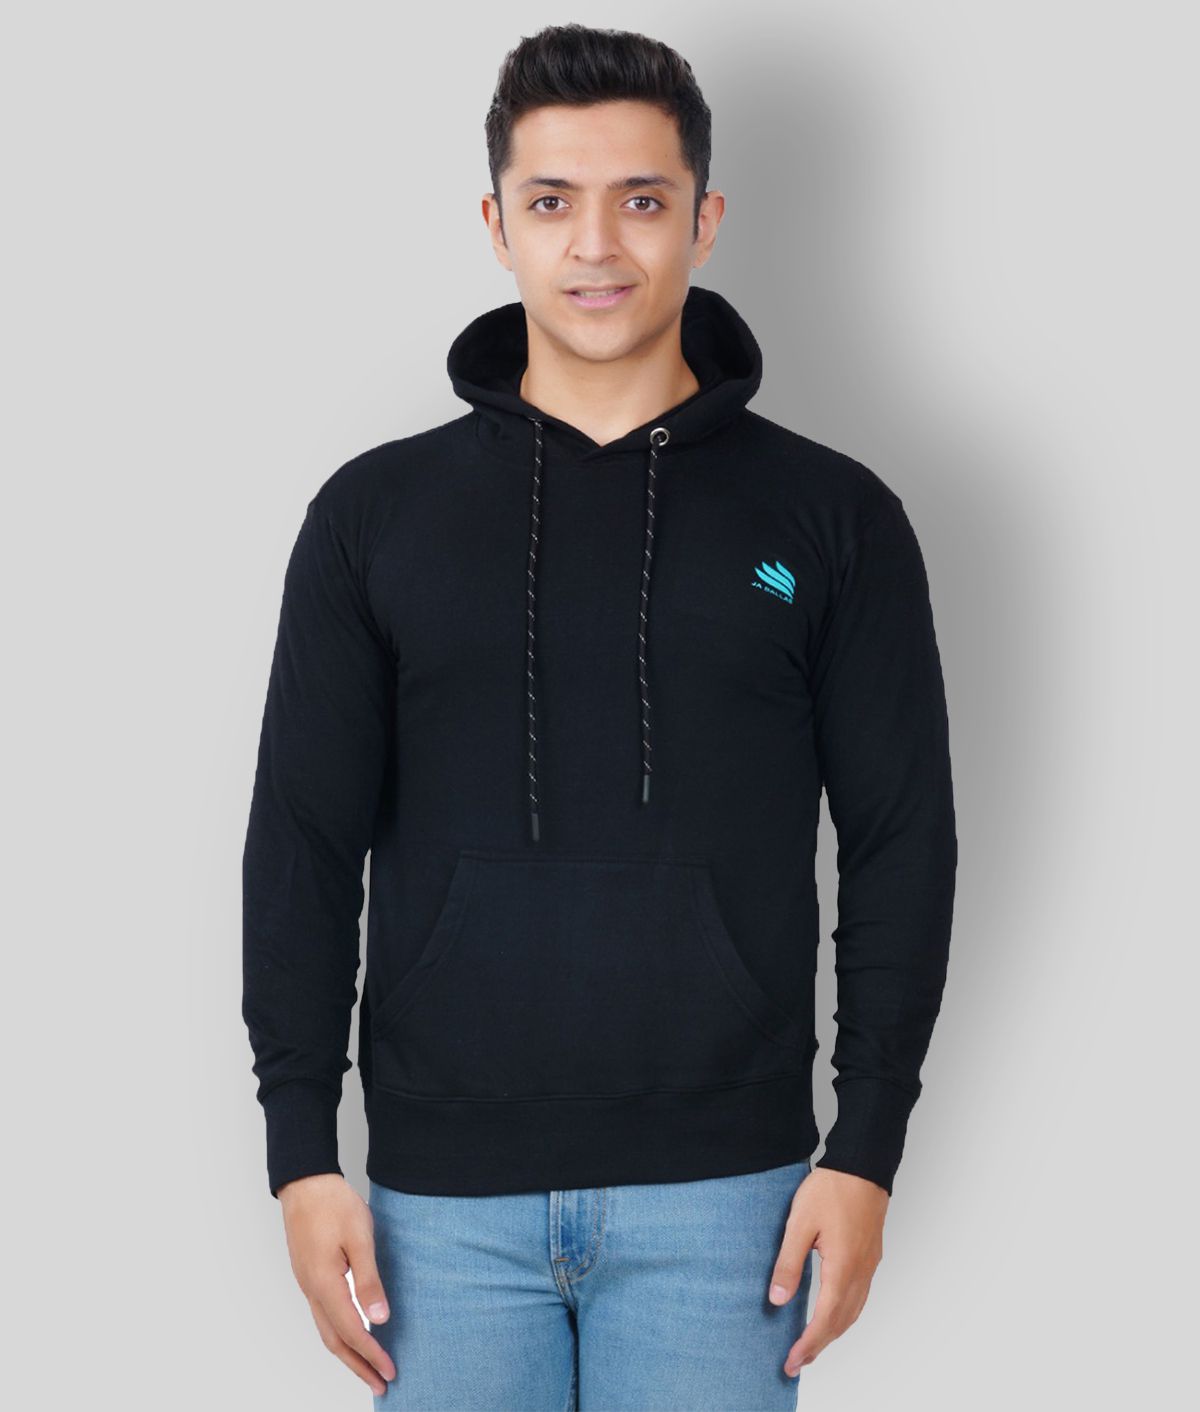 Buy JA DALLAS Black Sweatshirt Pack of 1 Online at Best Price in India ...